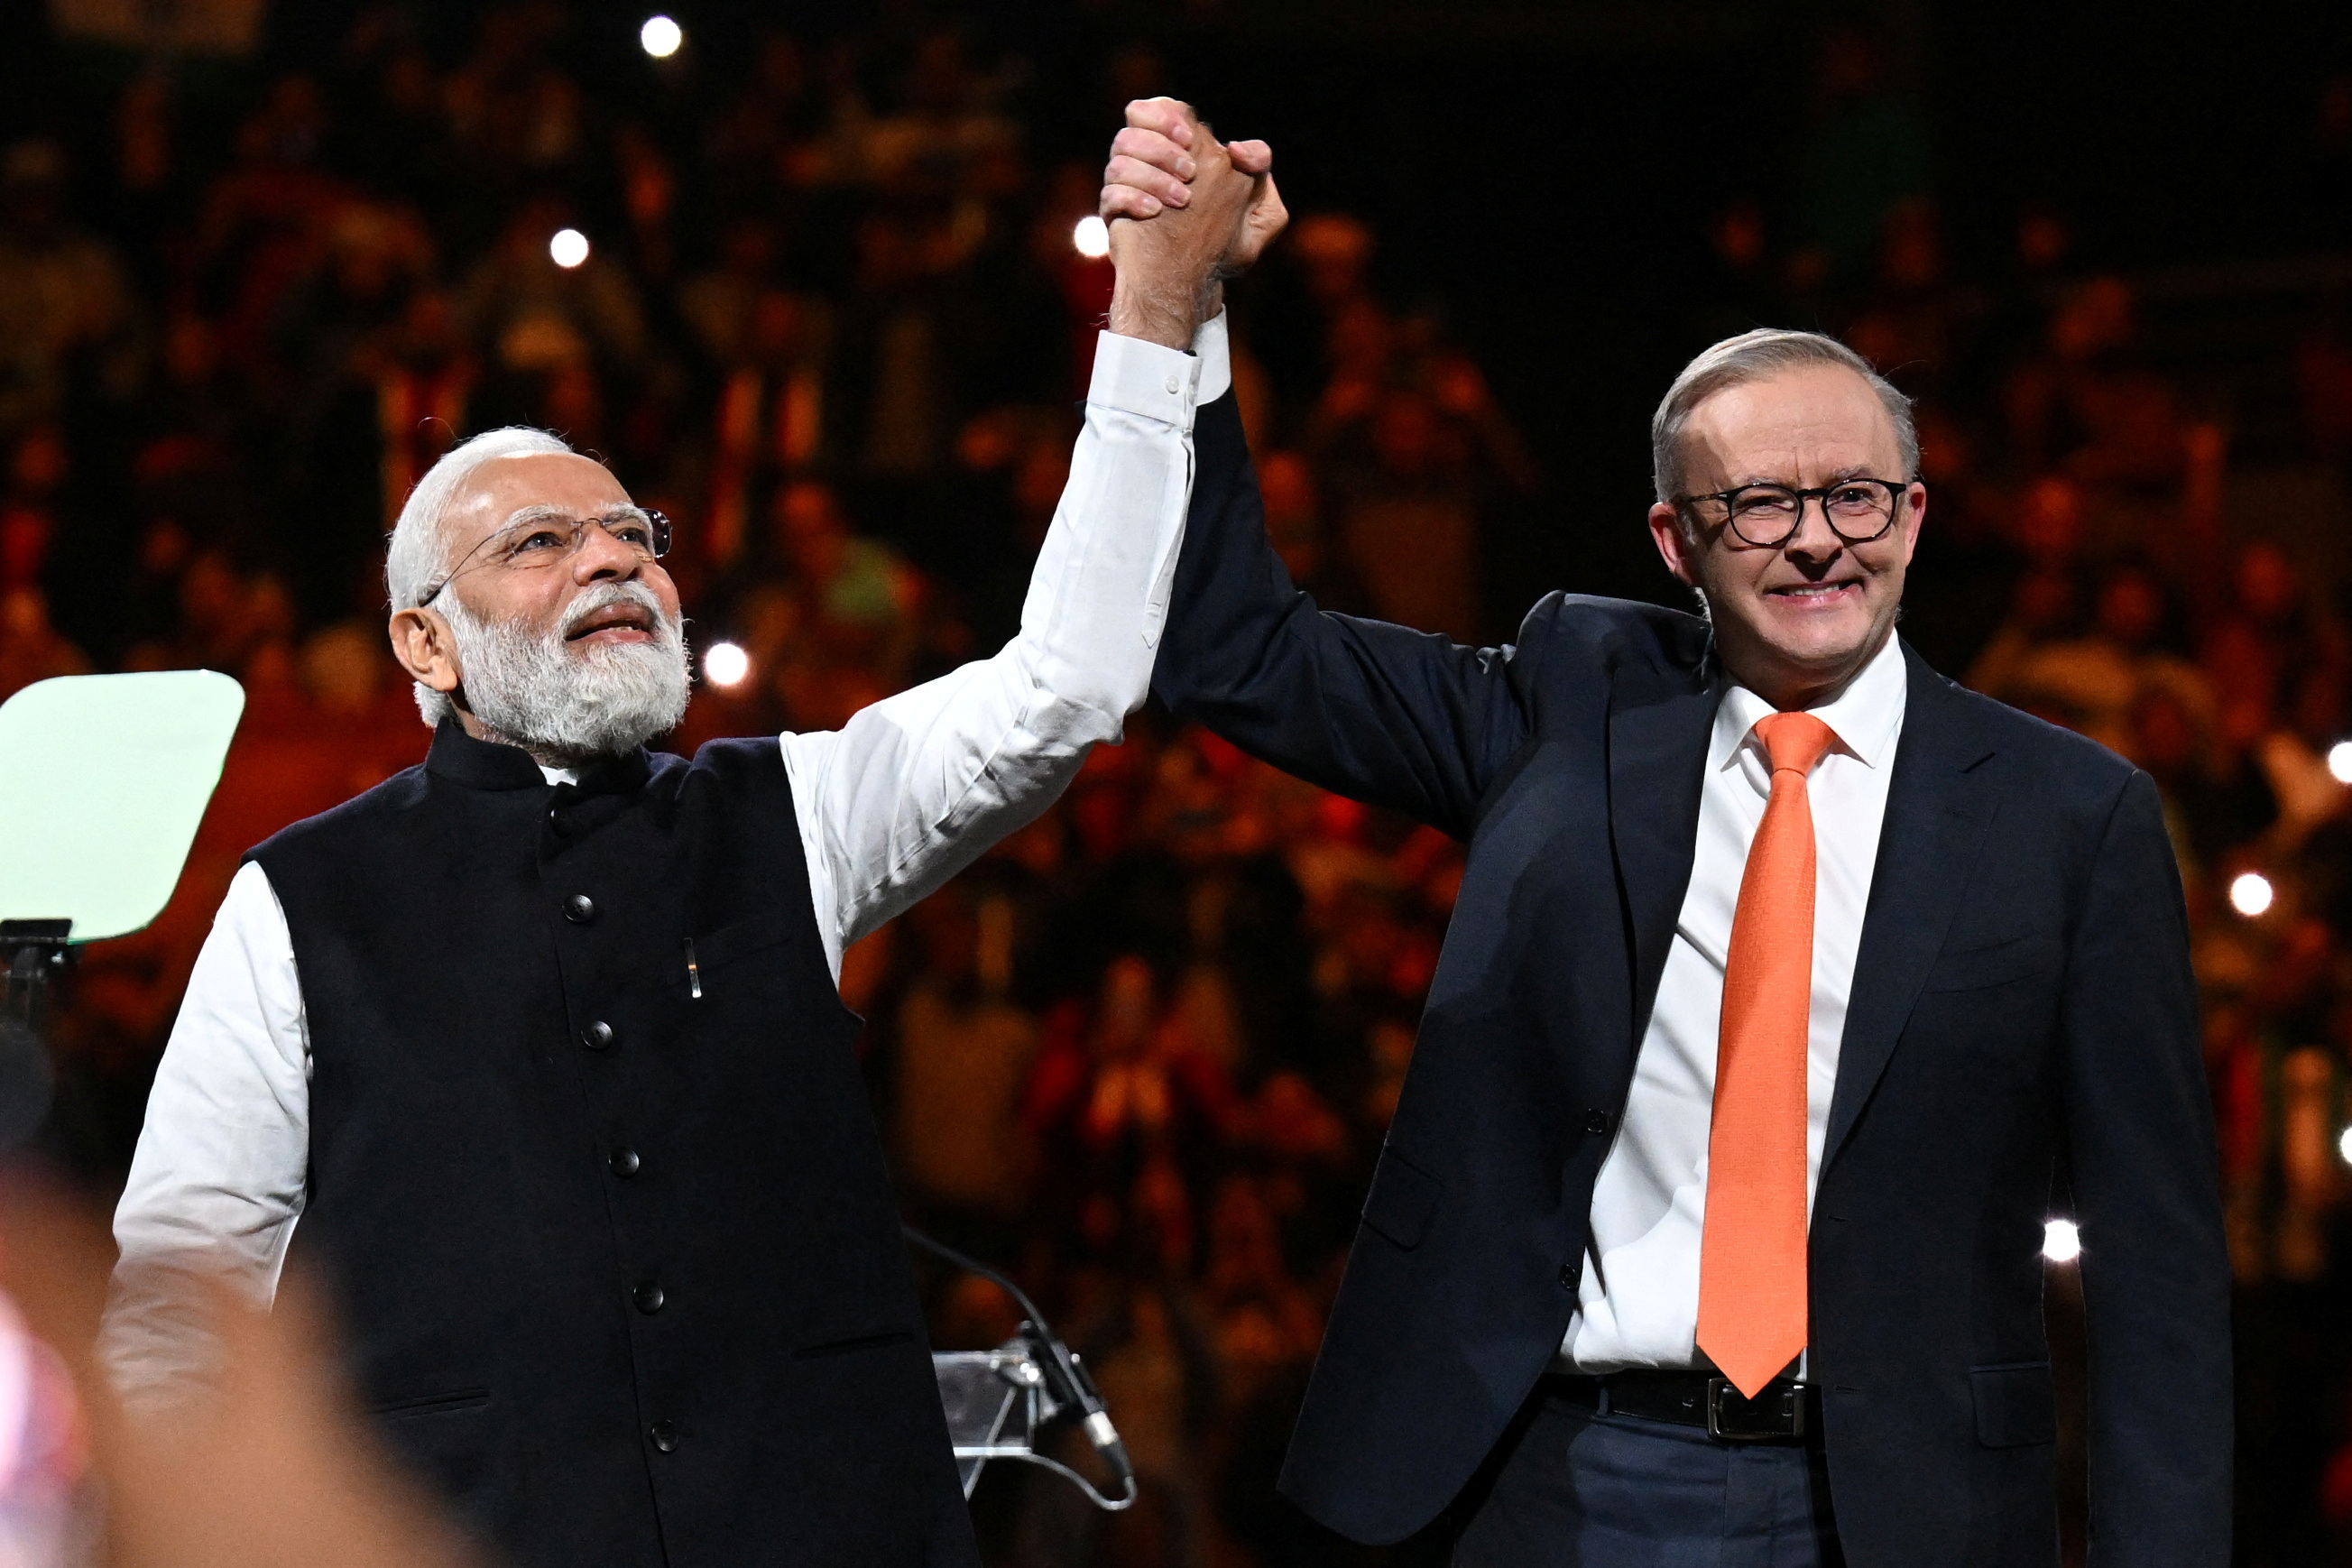 India's Prime Minister Narendra Modi in Sydney